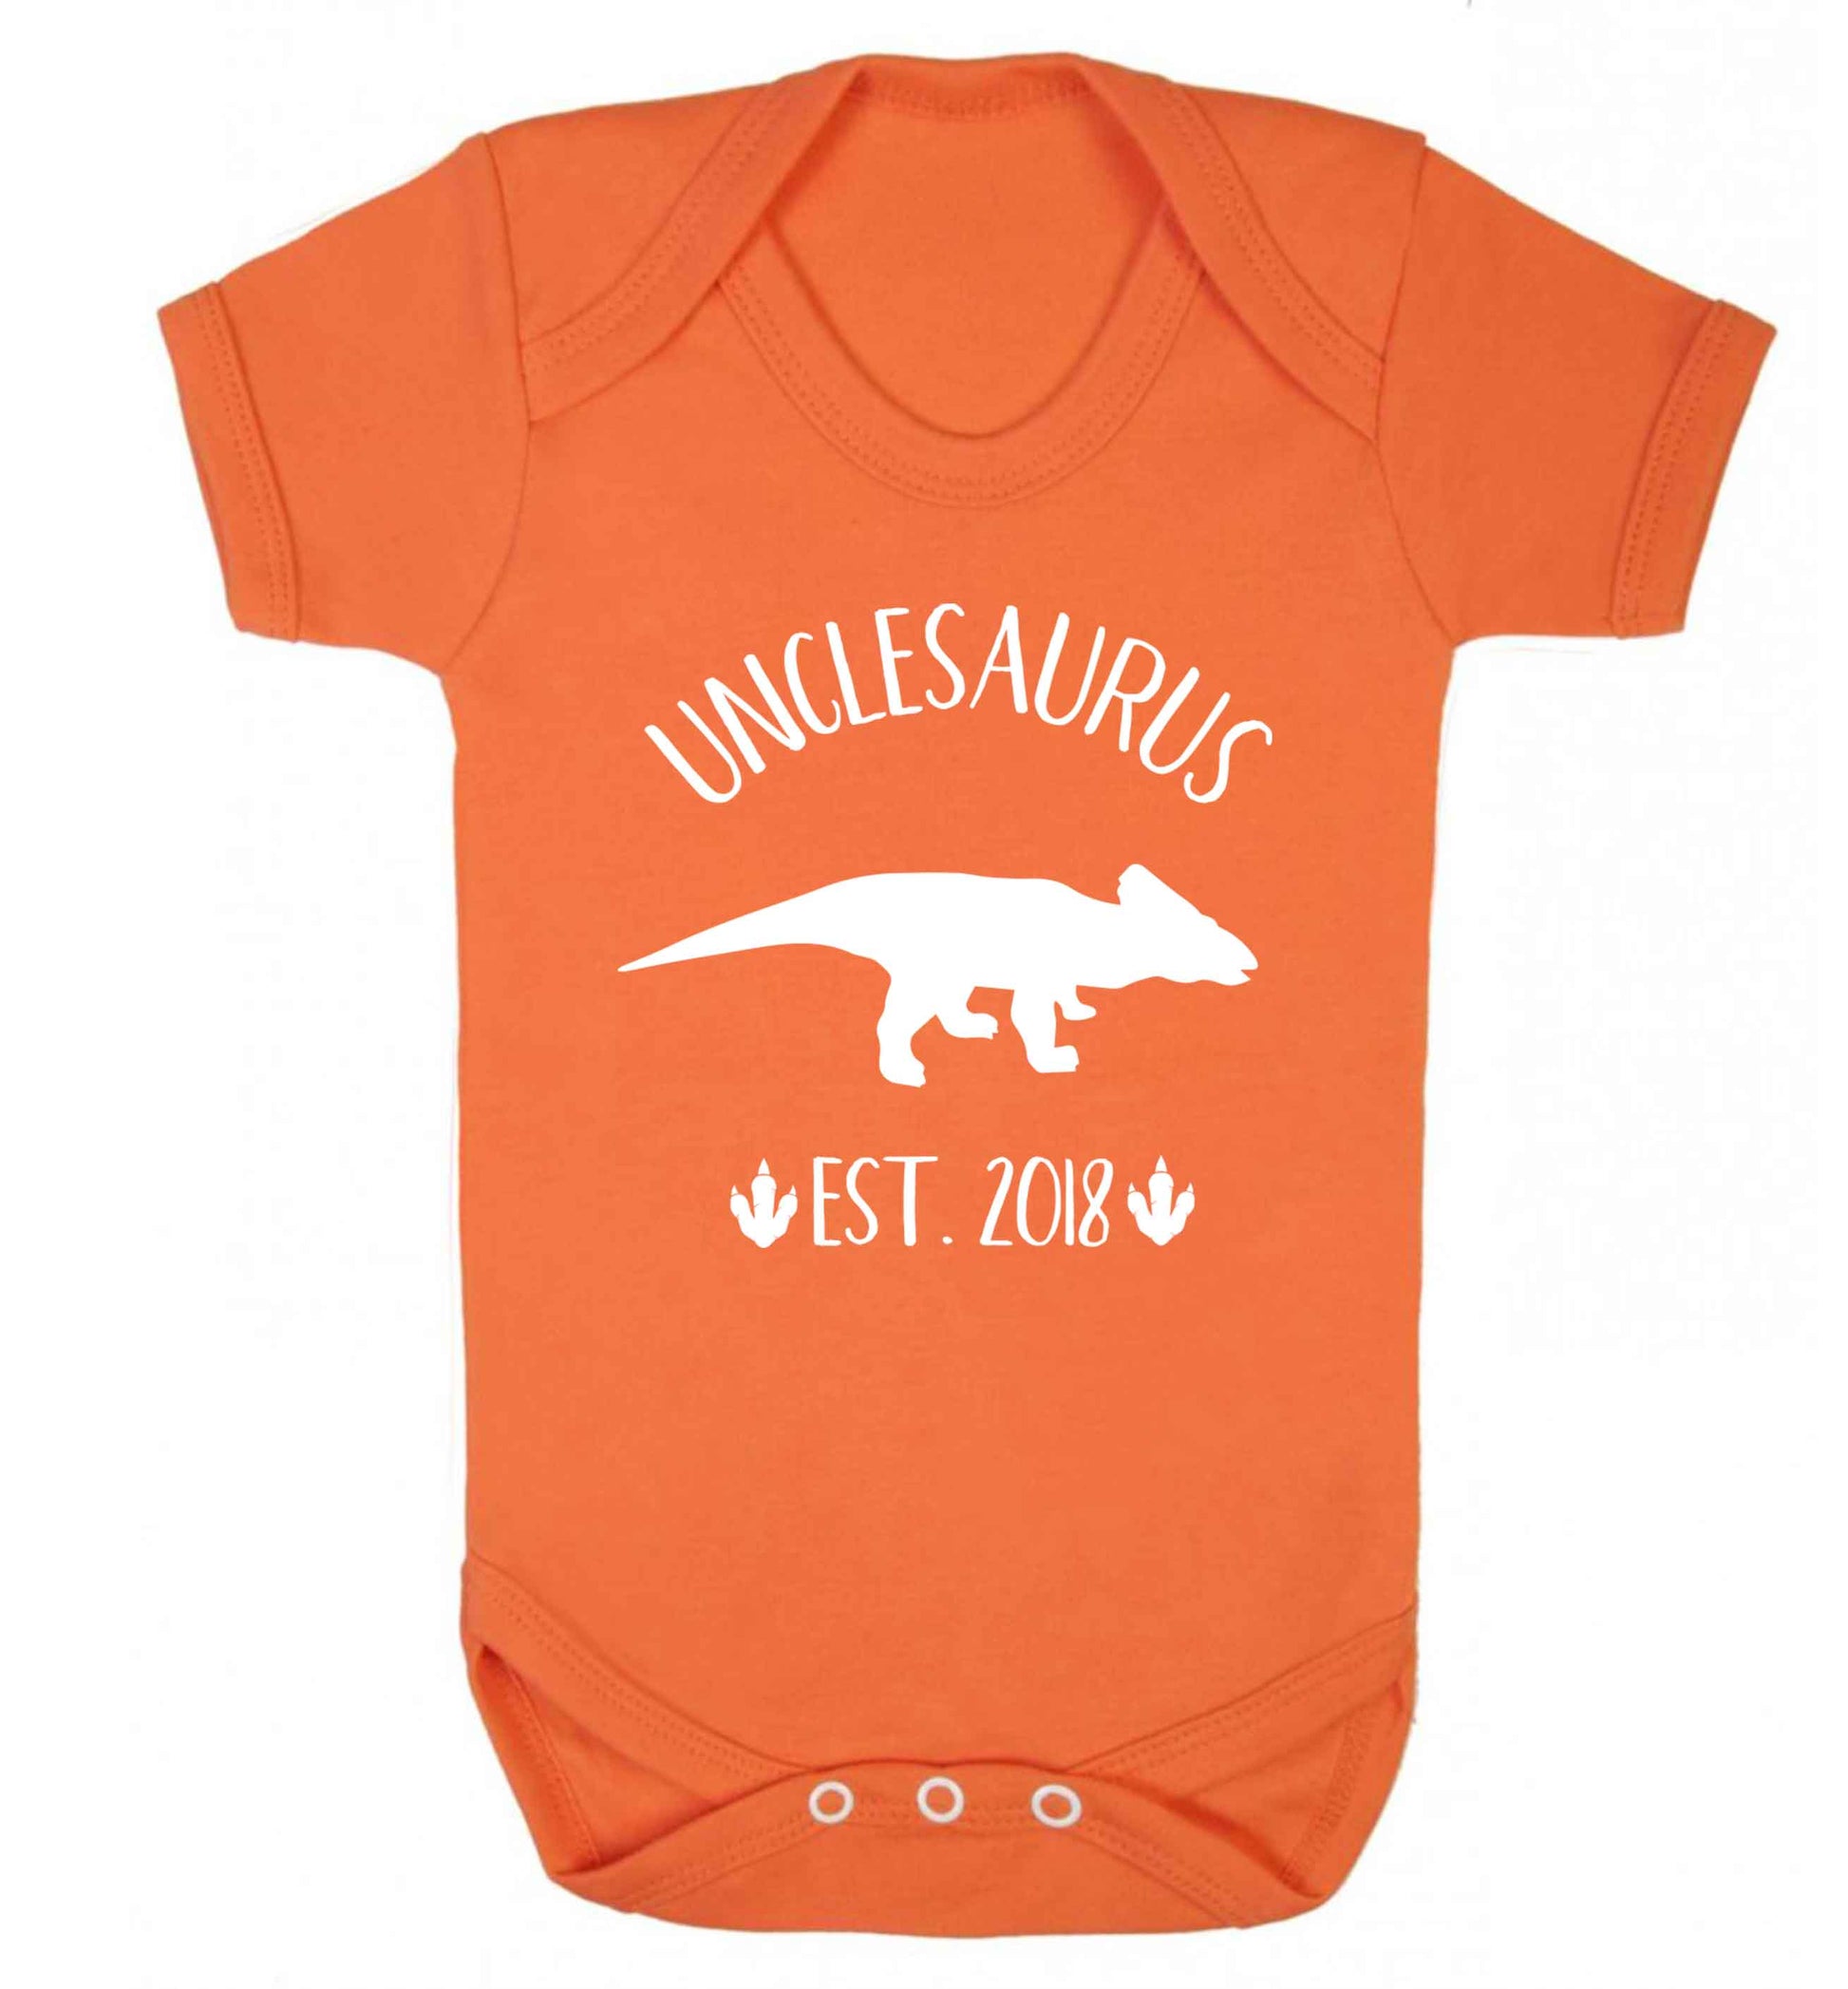 Personalised unclesaurus since (custom date) Baby Vest orange 18-24 months